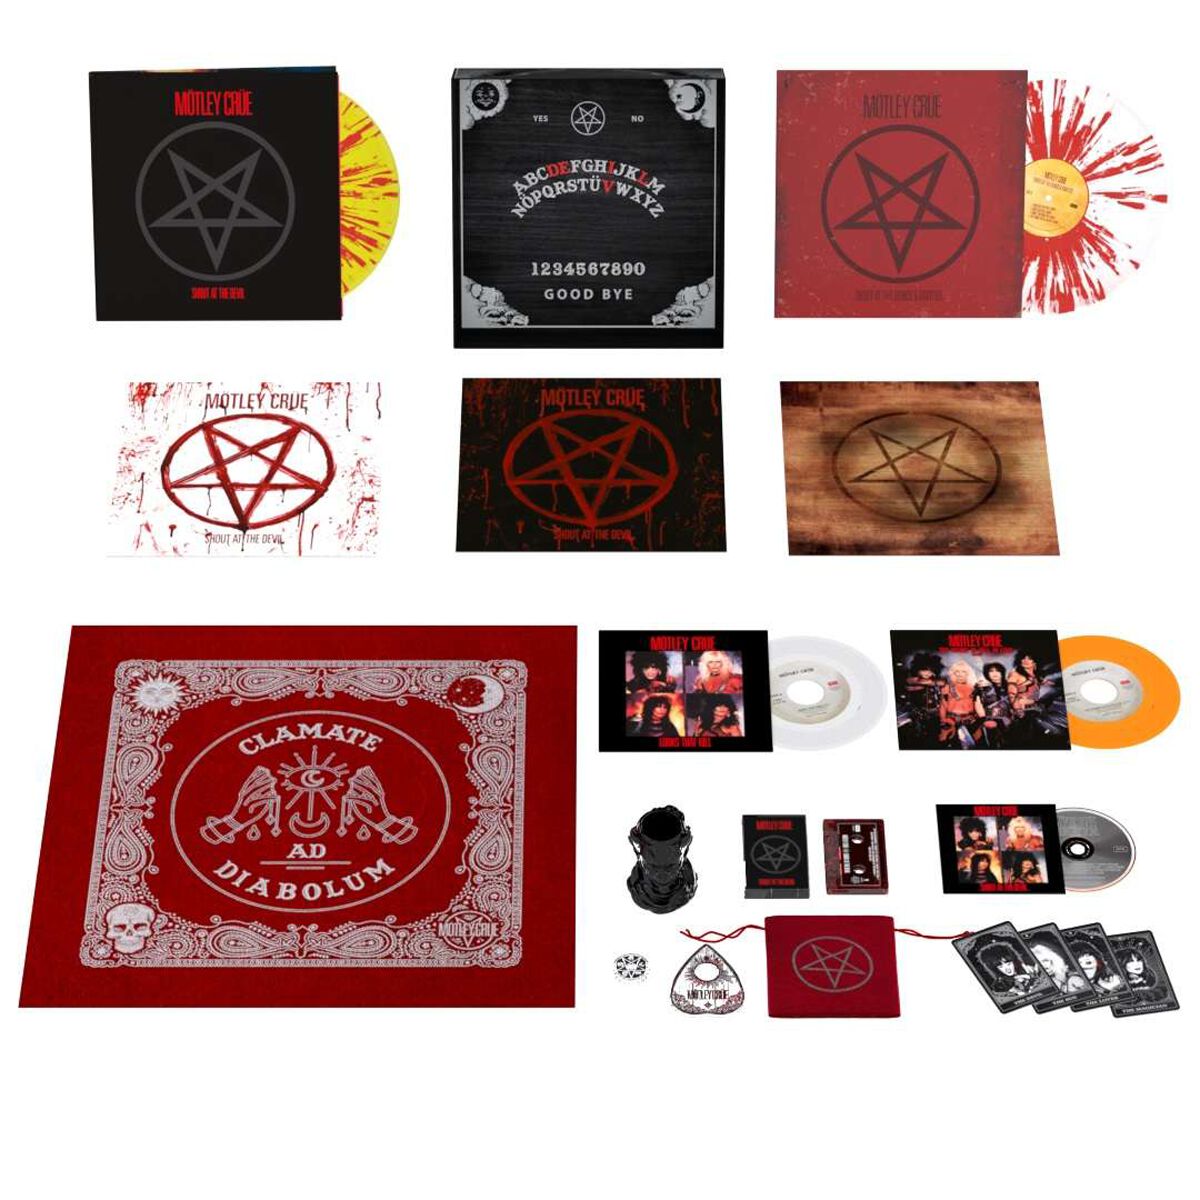 Mötley Crüe Shout At The Devil (40th Anniversary Box Set) LP multicolor von Mötley Crüe